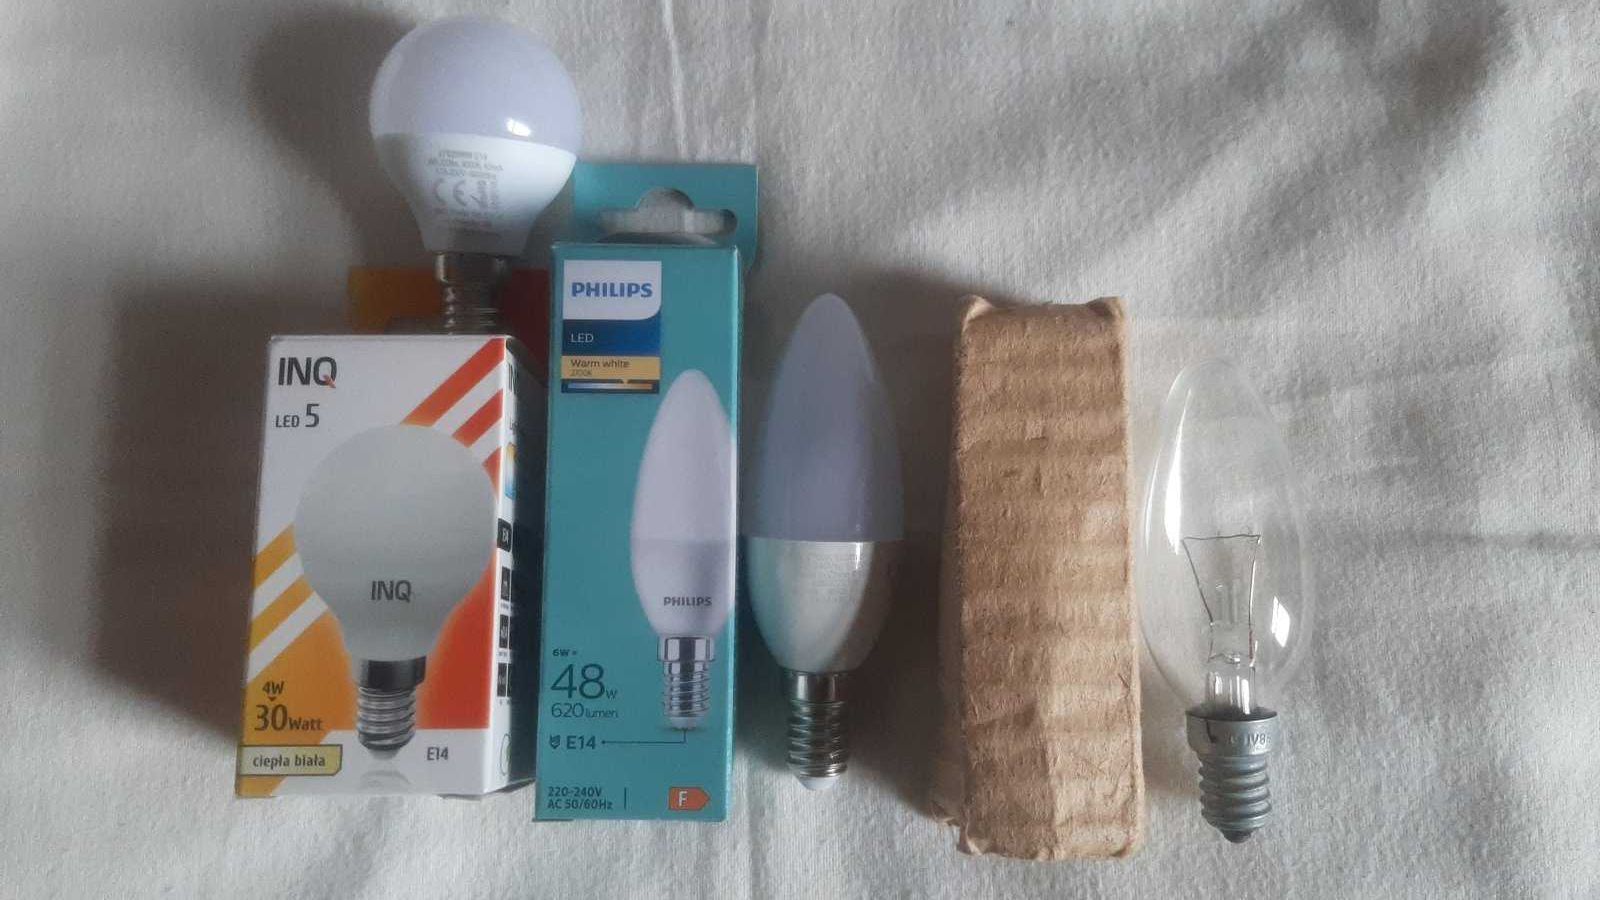 Светодиодная лампа INQ LED 5-323LM-E14-4w, Philips LED-620LM-E14-6W